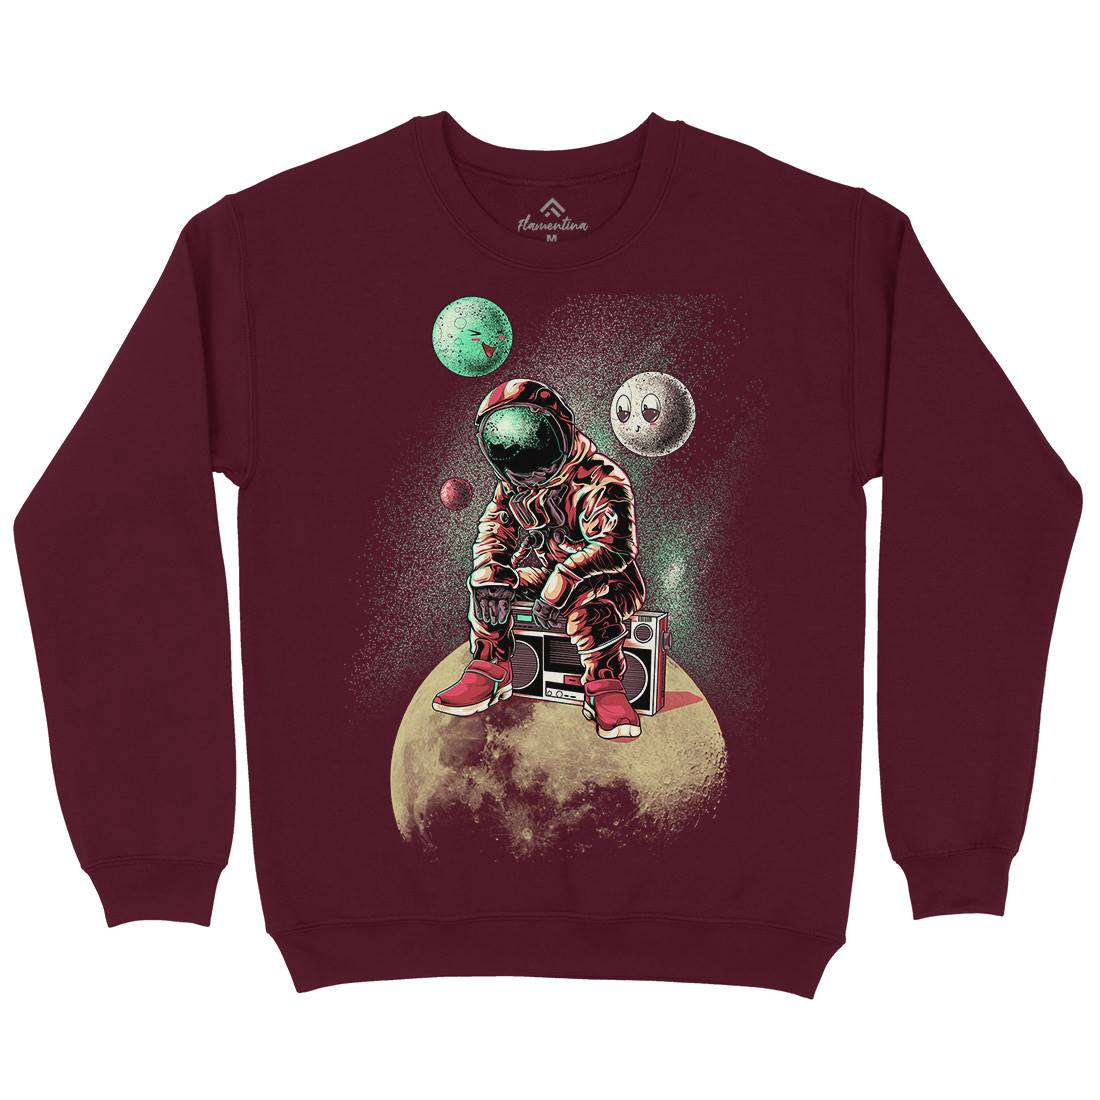 Astronaut Moon Mens Crew Neck Sweatshirt Space B986